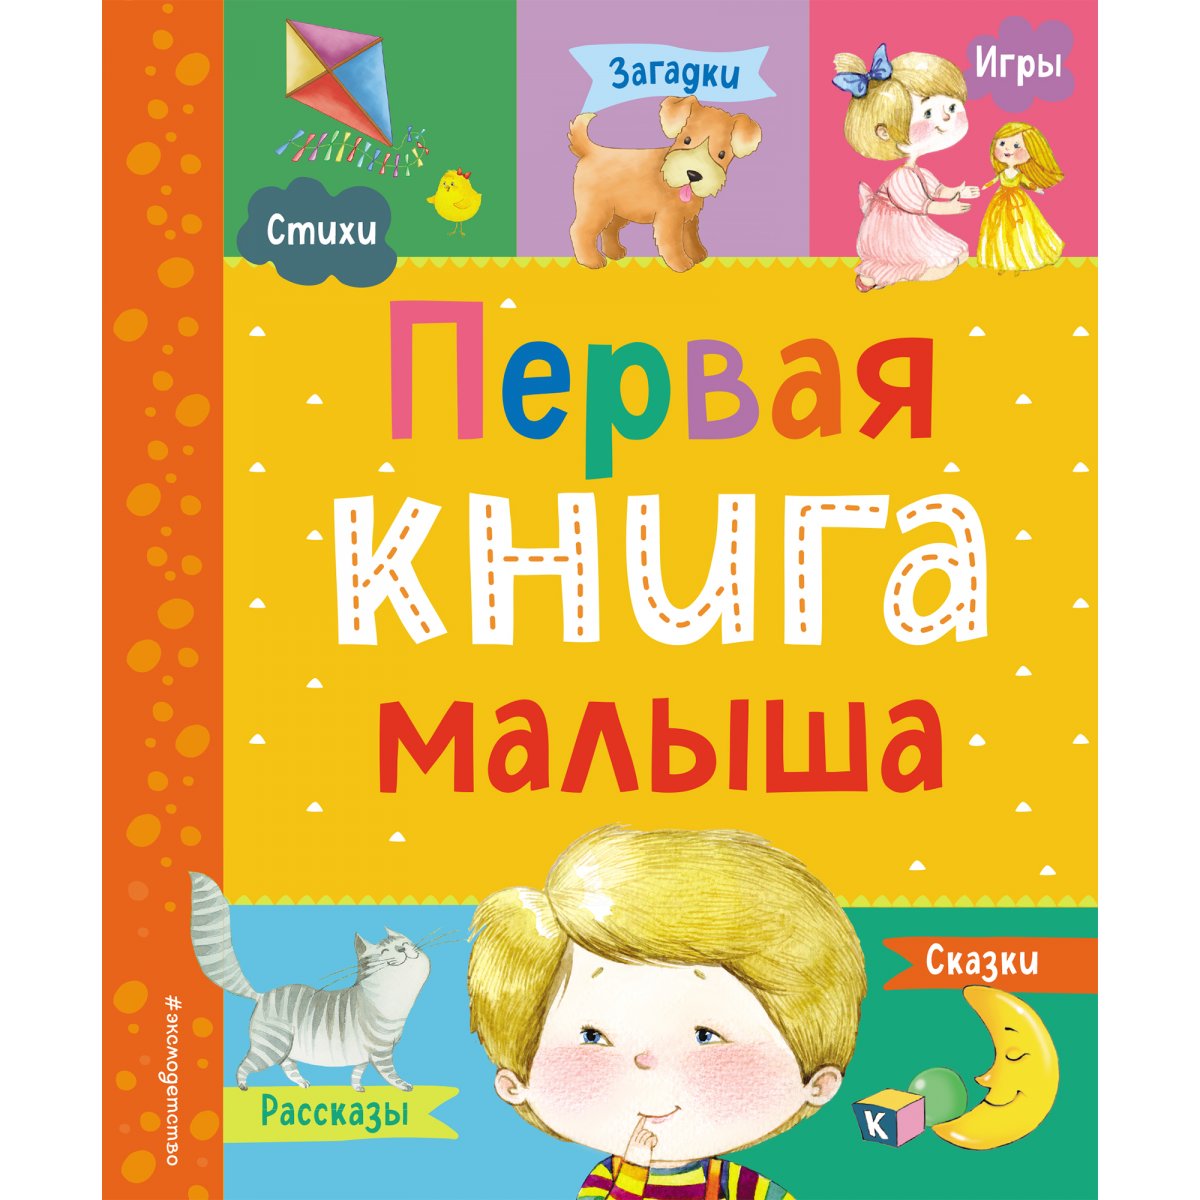 MAAM.ru: Книжка-малышка из СD-дисков по стихотворениям А. Барто